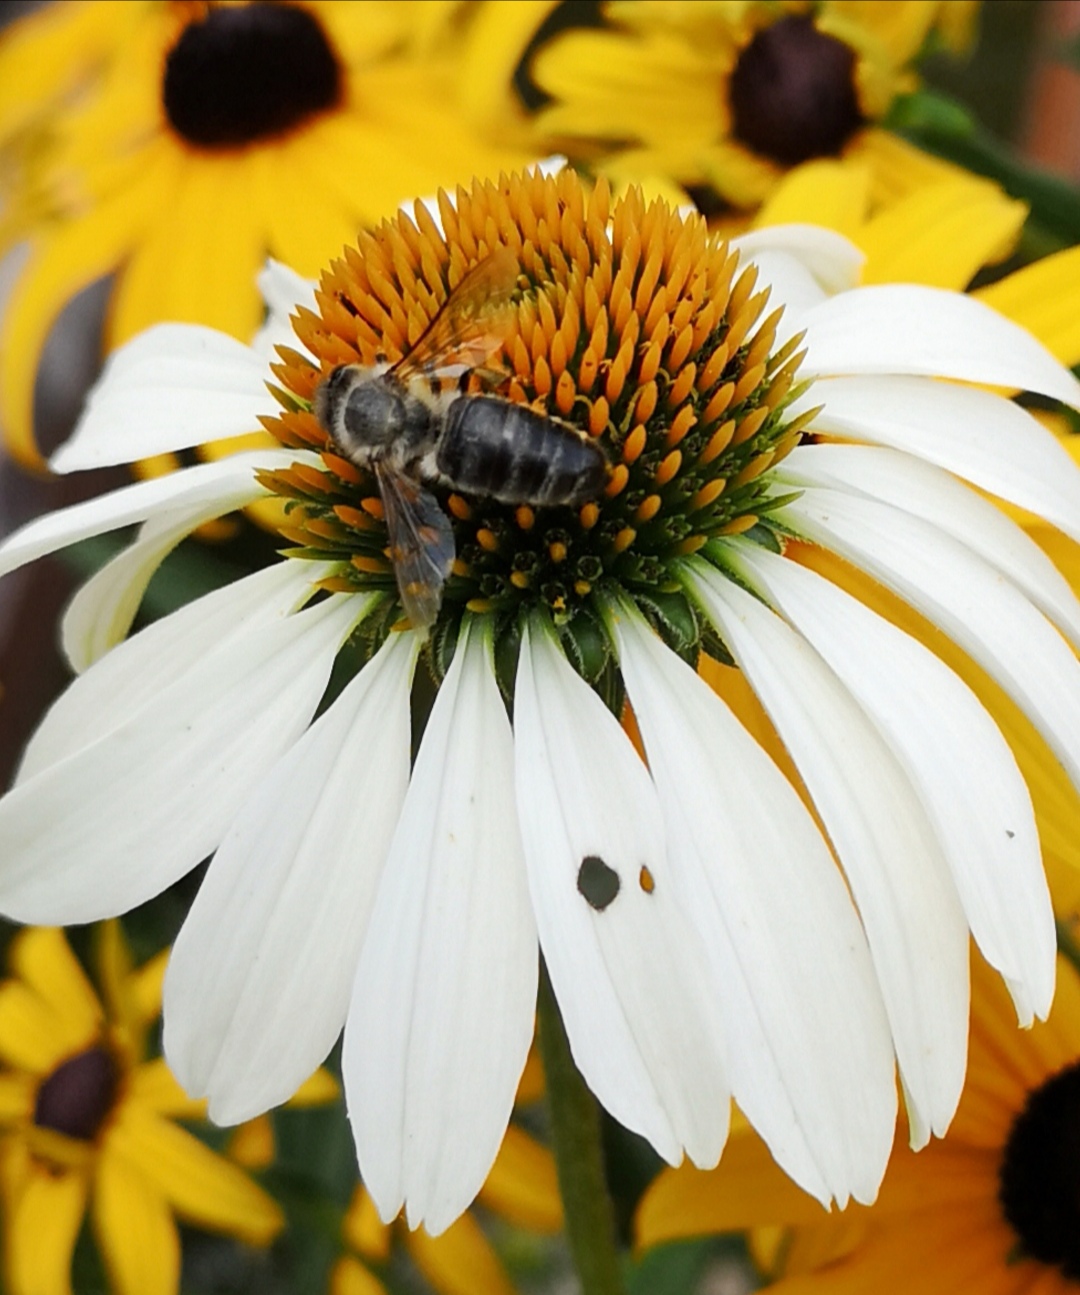 Swiss bee on flower